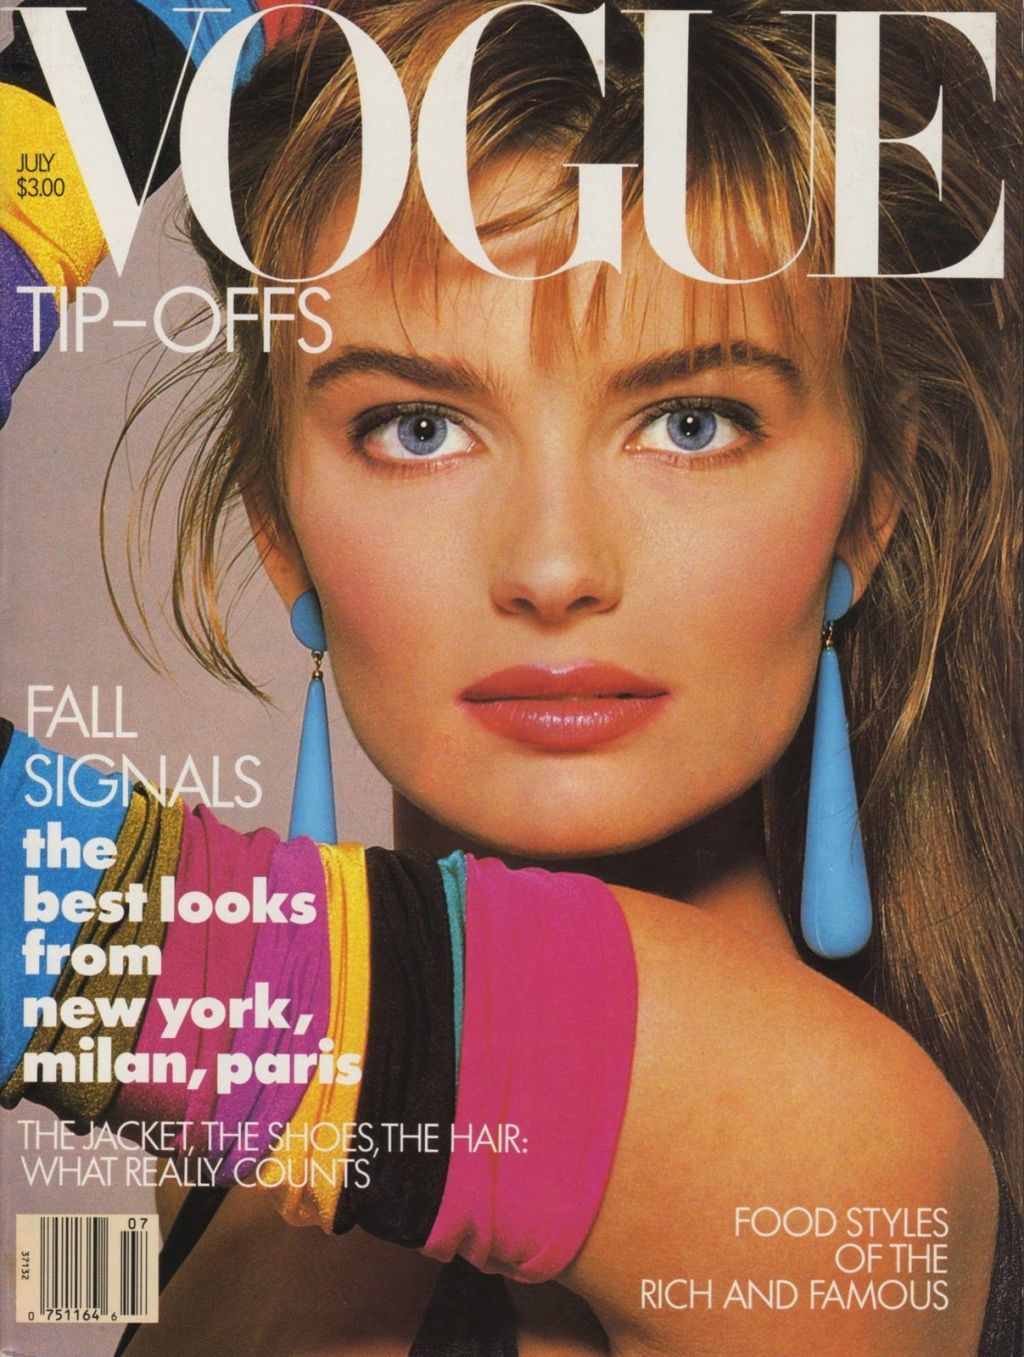 насловница моде из 1987. са неонским навлакама, мода из 1980-их